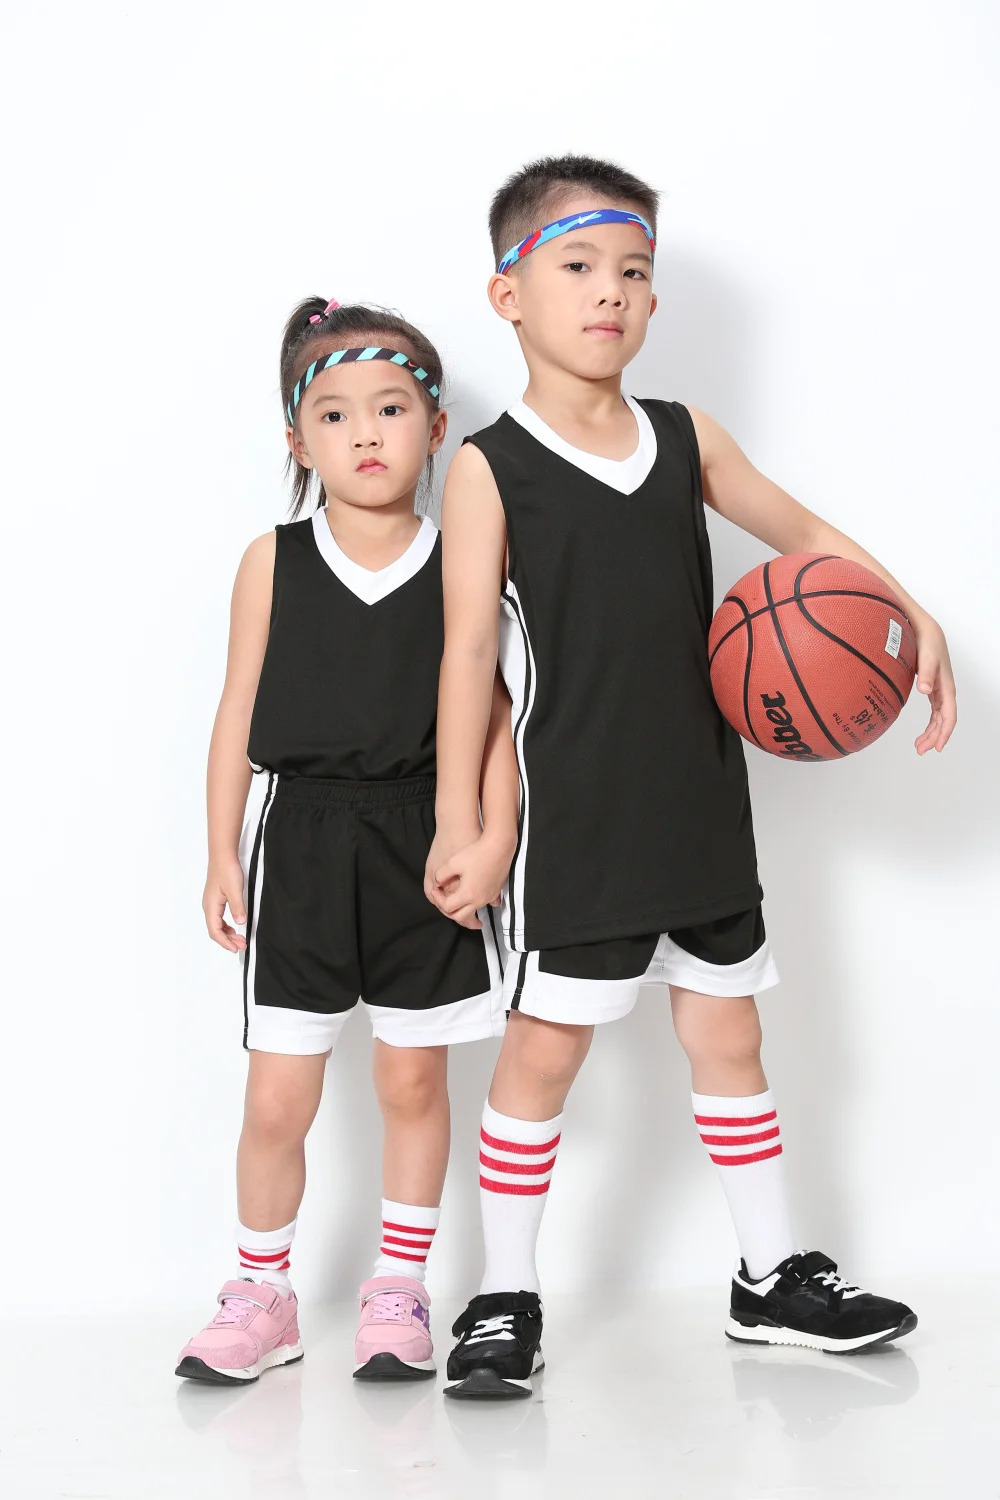 Kids Basketball Kit Training Suit Sport Vest Shorts Jerseys Set Tracksuit Gifts 